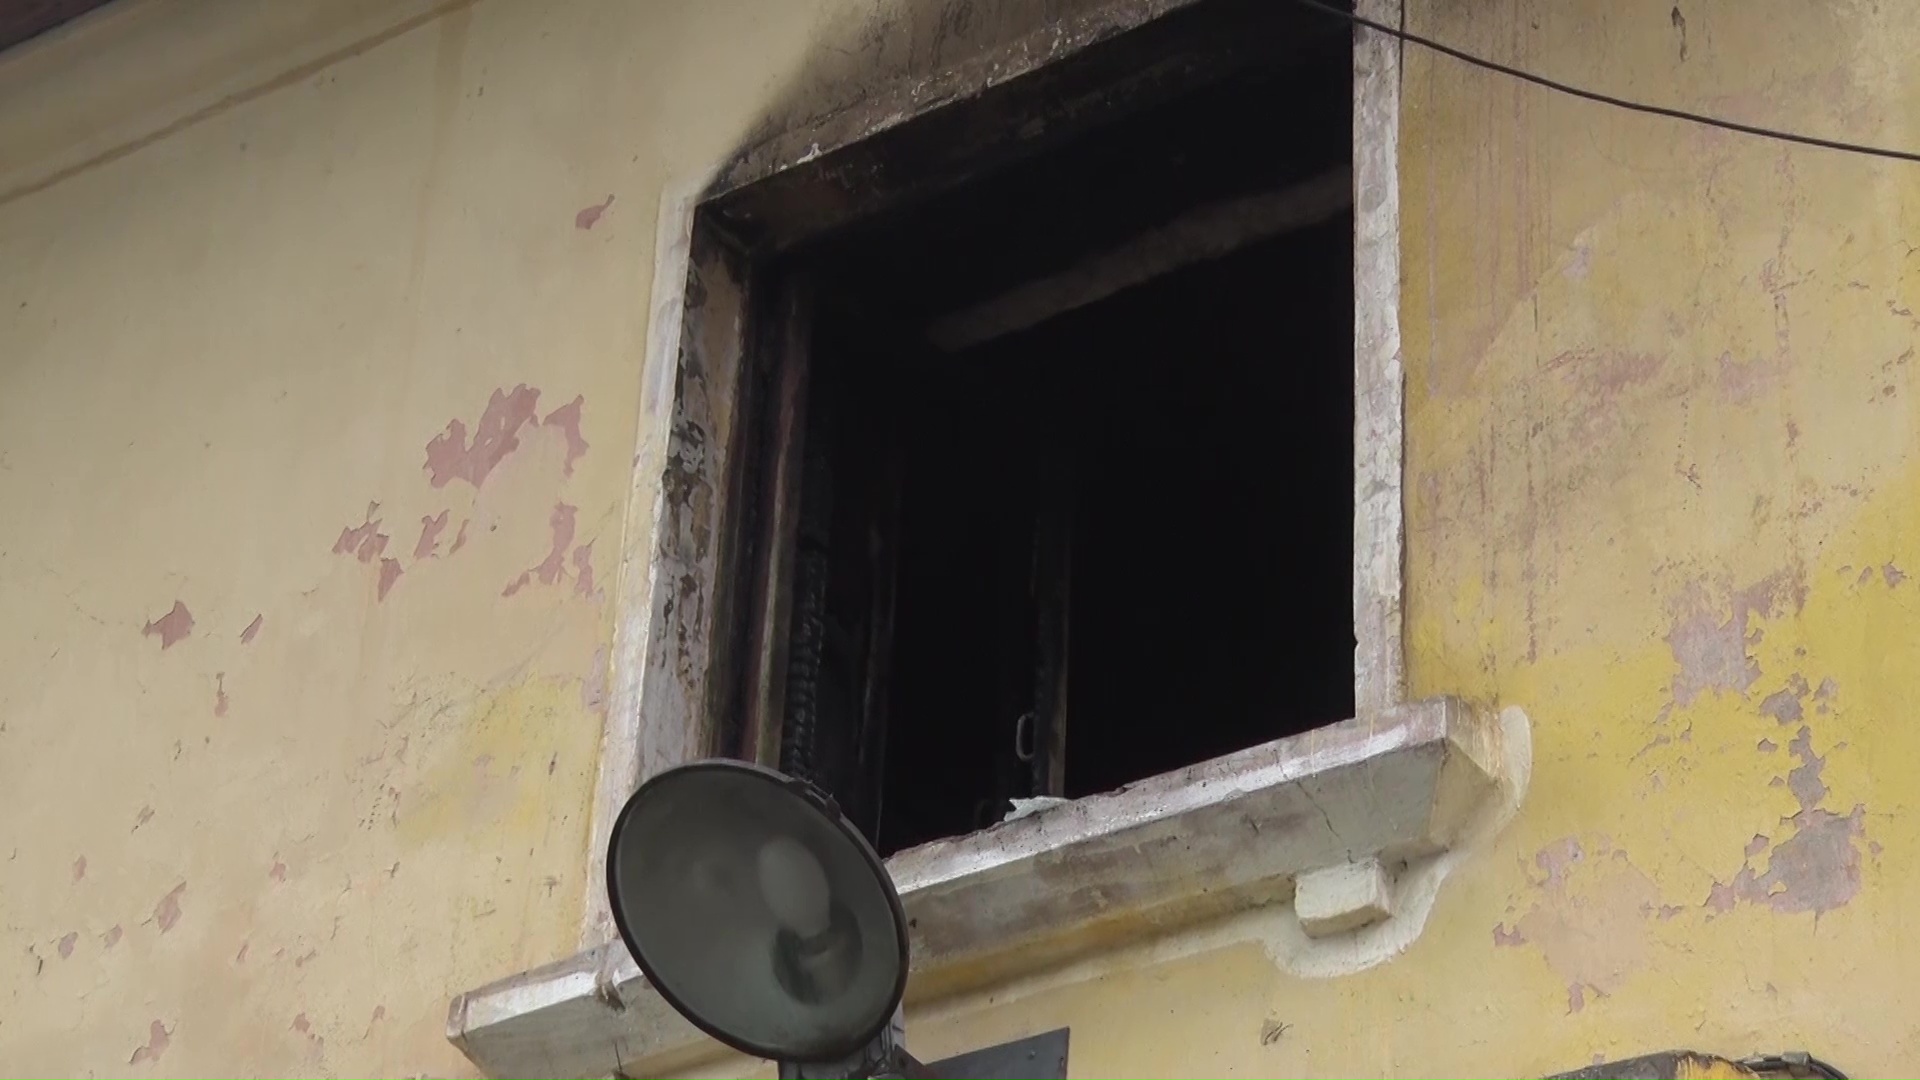 Жителям дома на Зелинского компенсируют потерю имущества при пожаре